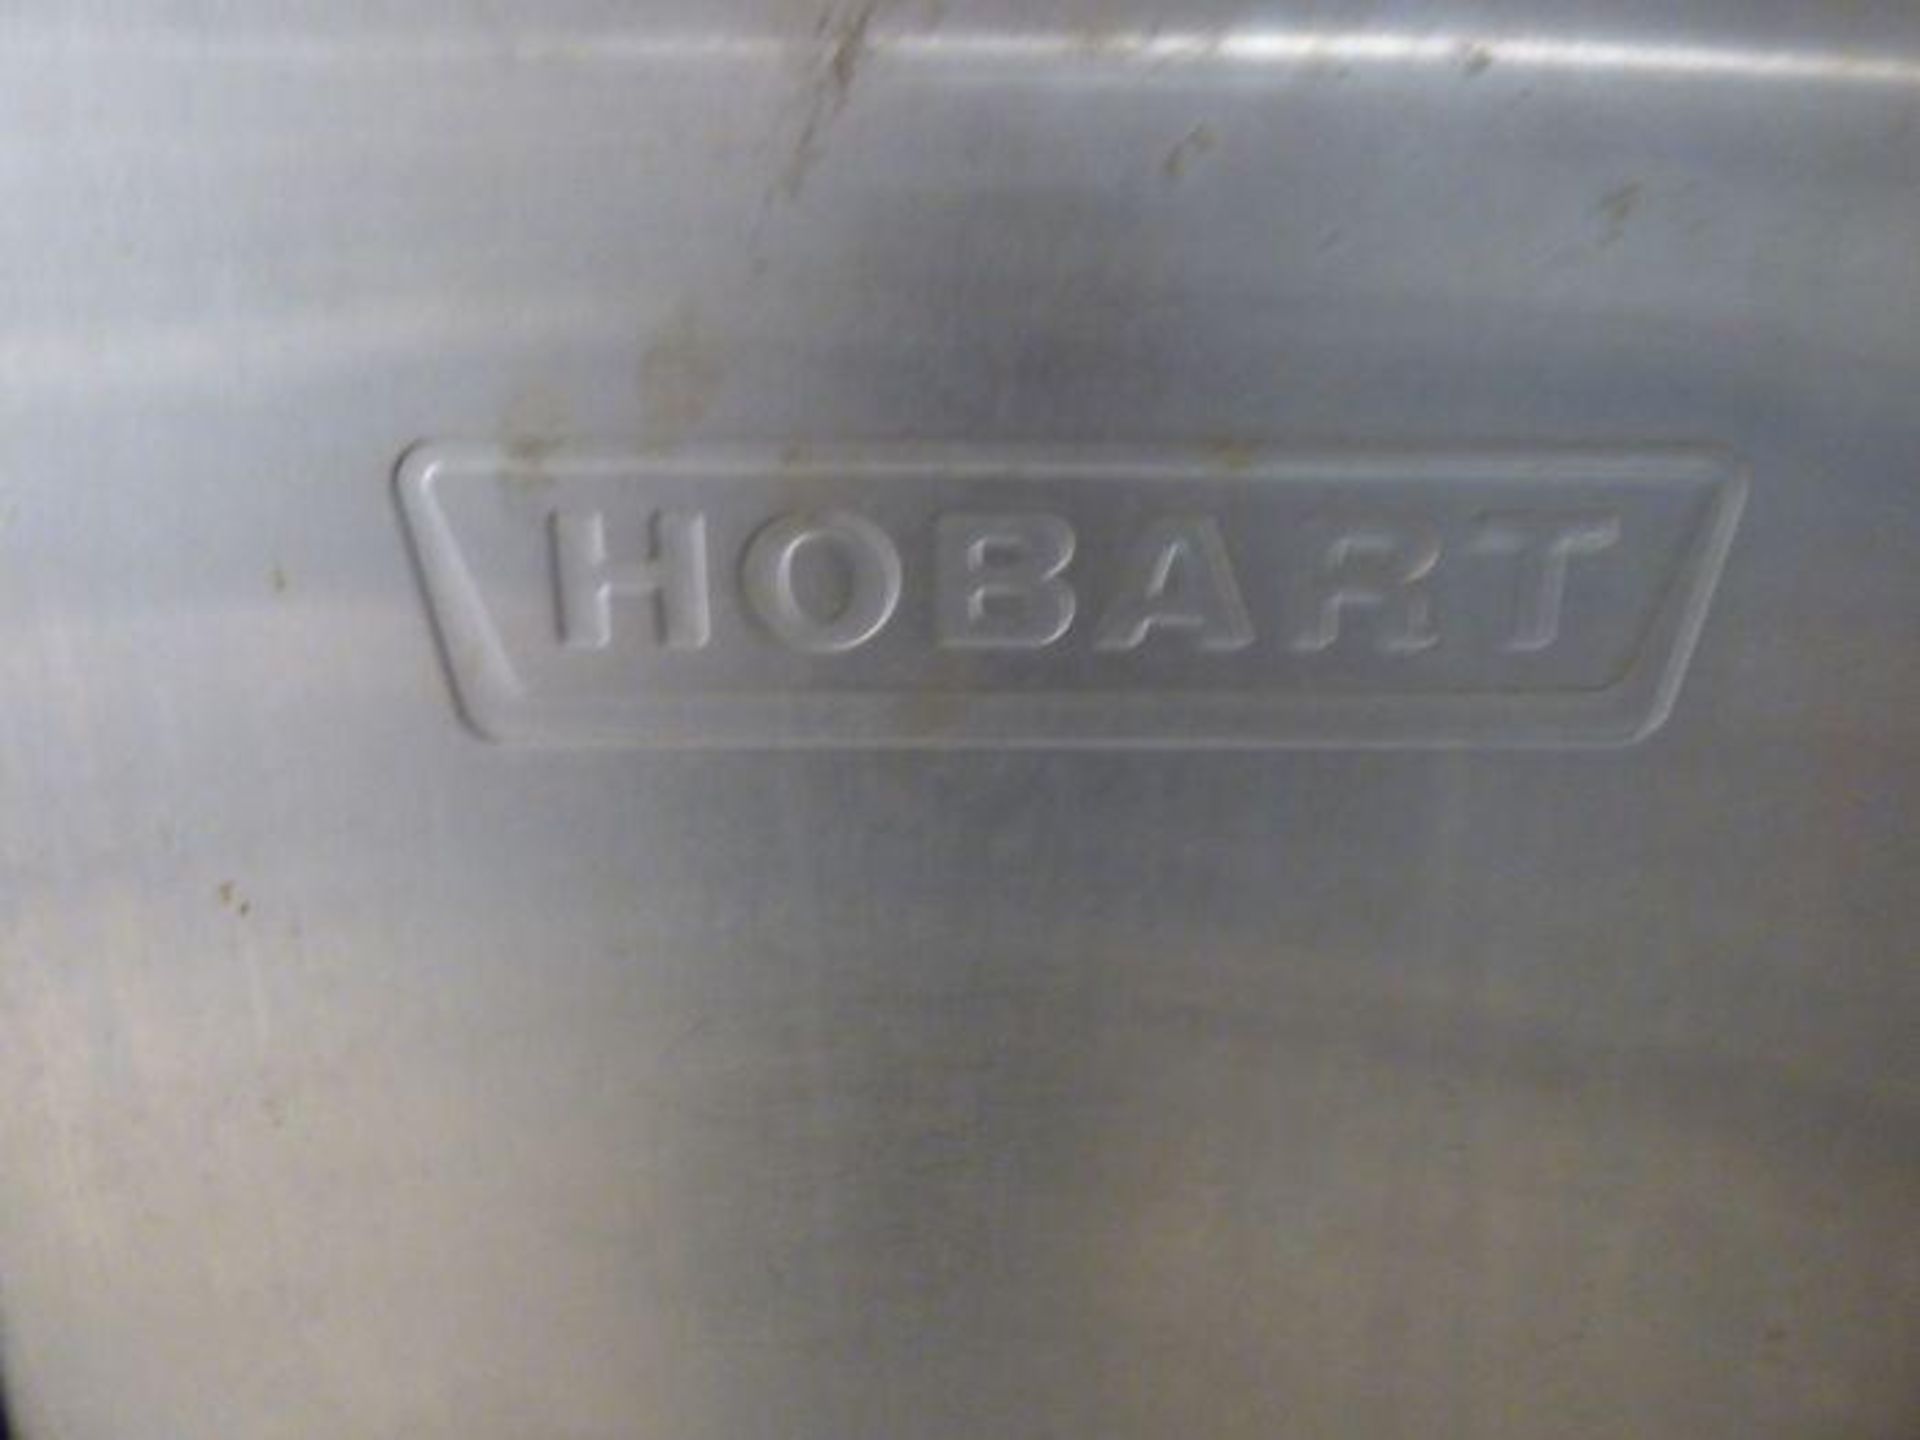 Hobart Conveyor Dishwasher - Image 2 of 7